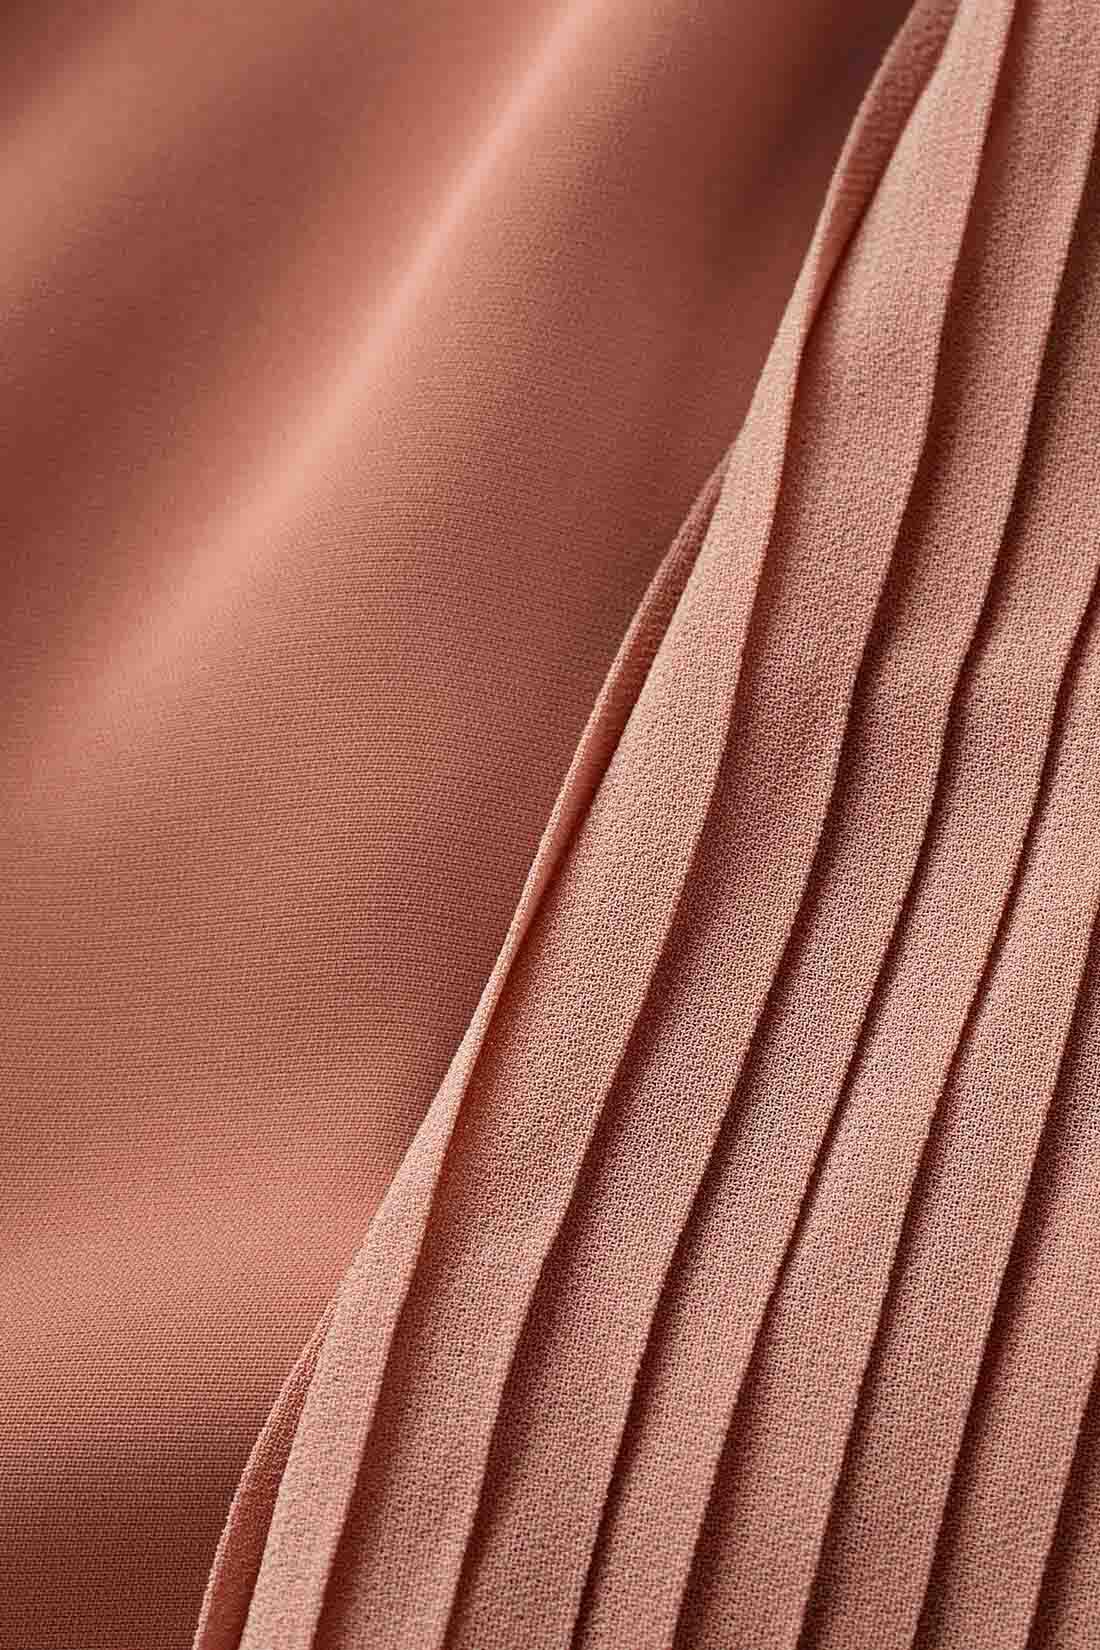 イディット|IEDIT[イディット]　袖プリーツが繊細なボウタイデザインブラウス〈テラコッタピンク〉|マットなポリエステル素材とシフォンプリーツの軽やかな薄手素材の組み合わせ。 ※お届けするカラーとは異なります。